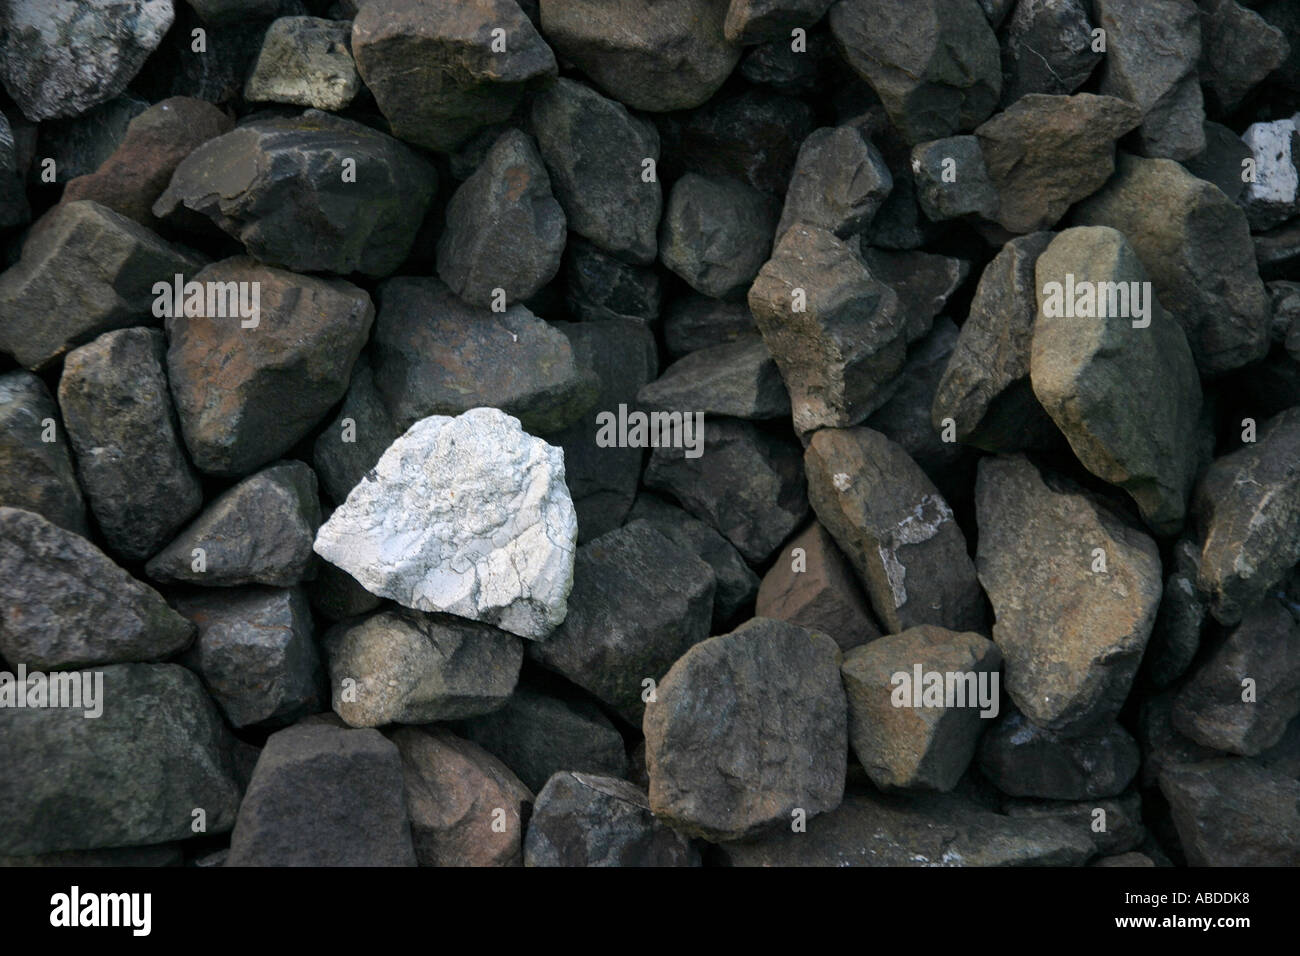 White stone surround by dark stones Stock Photo